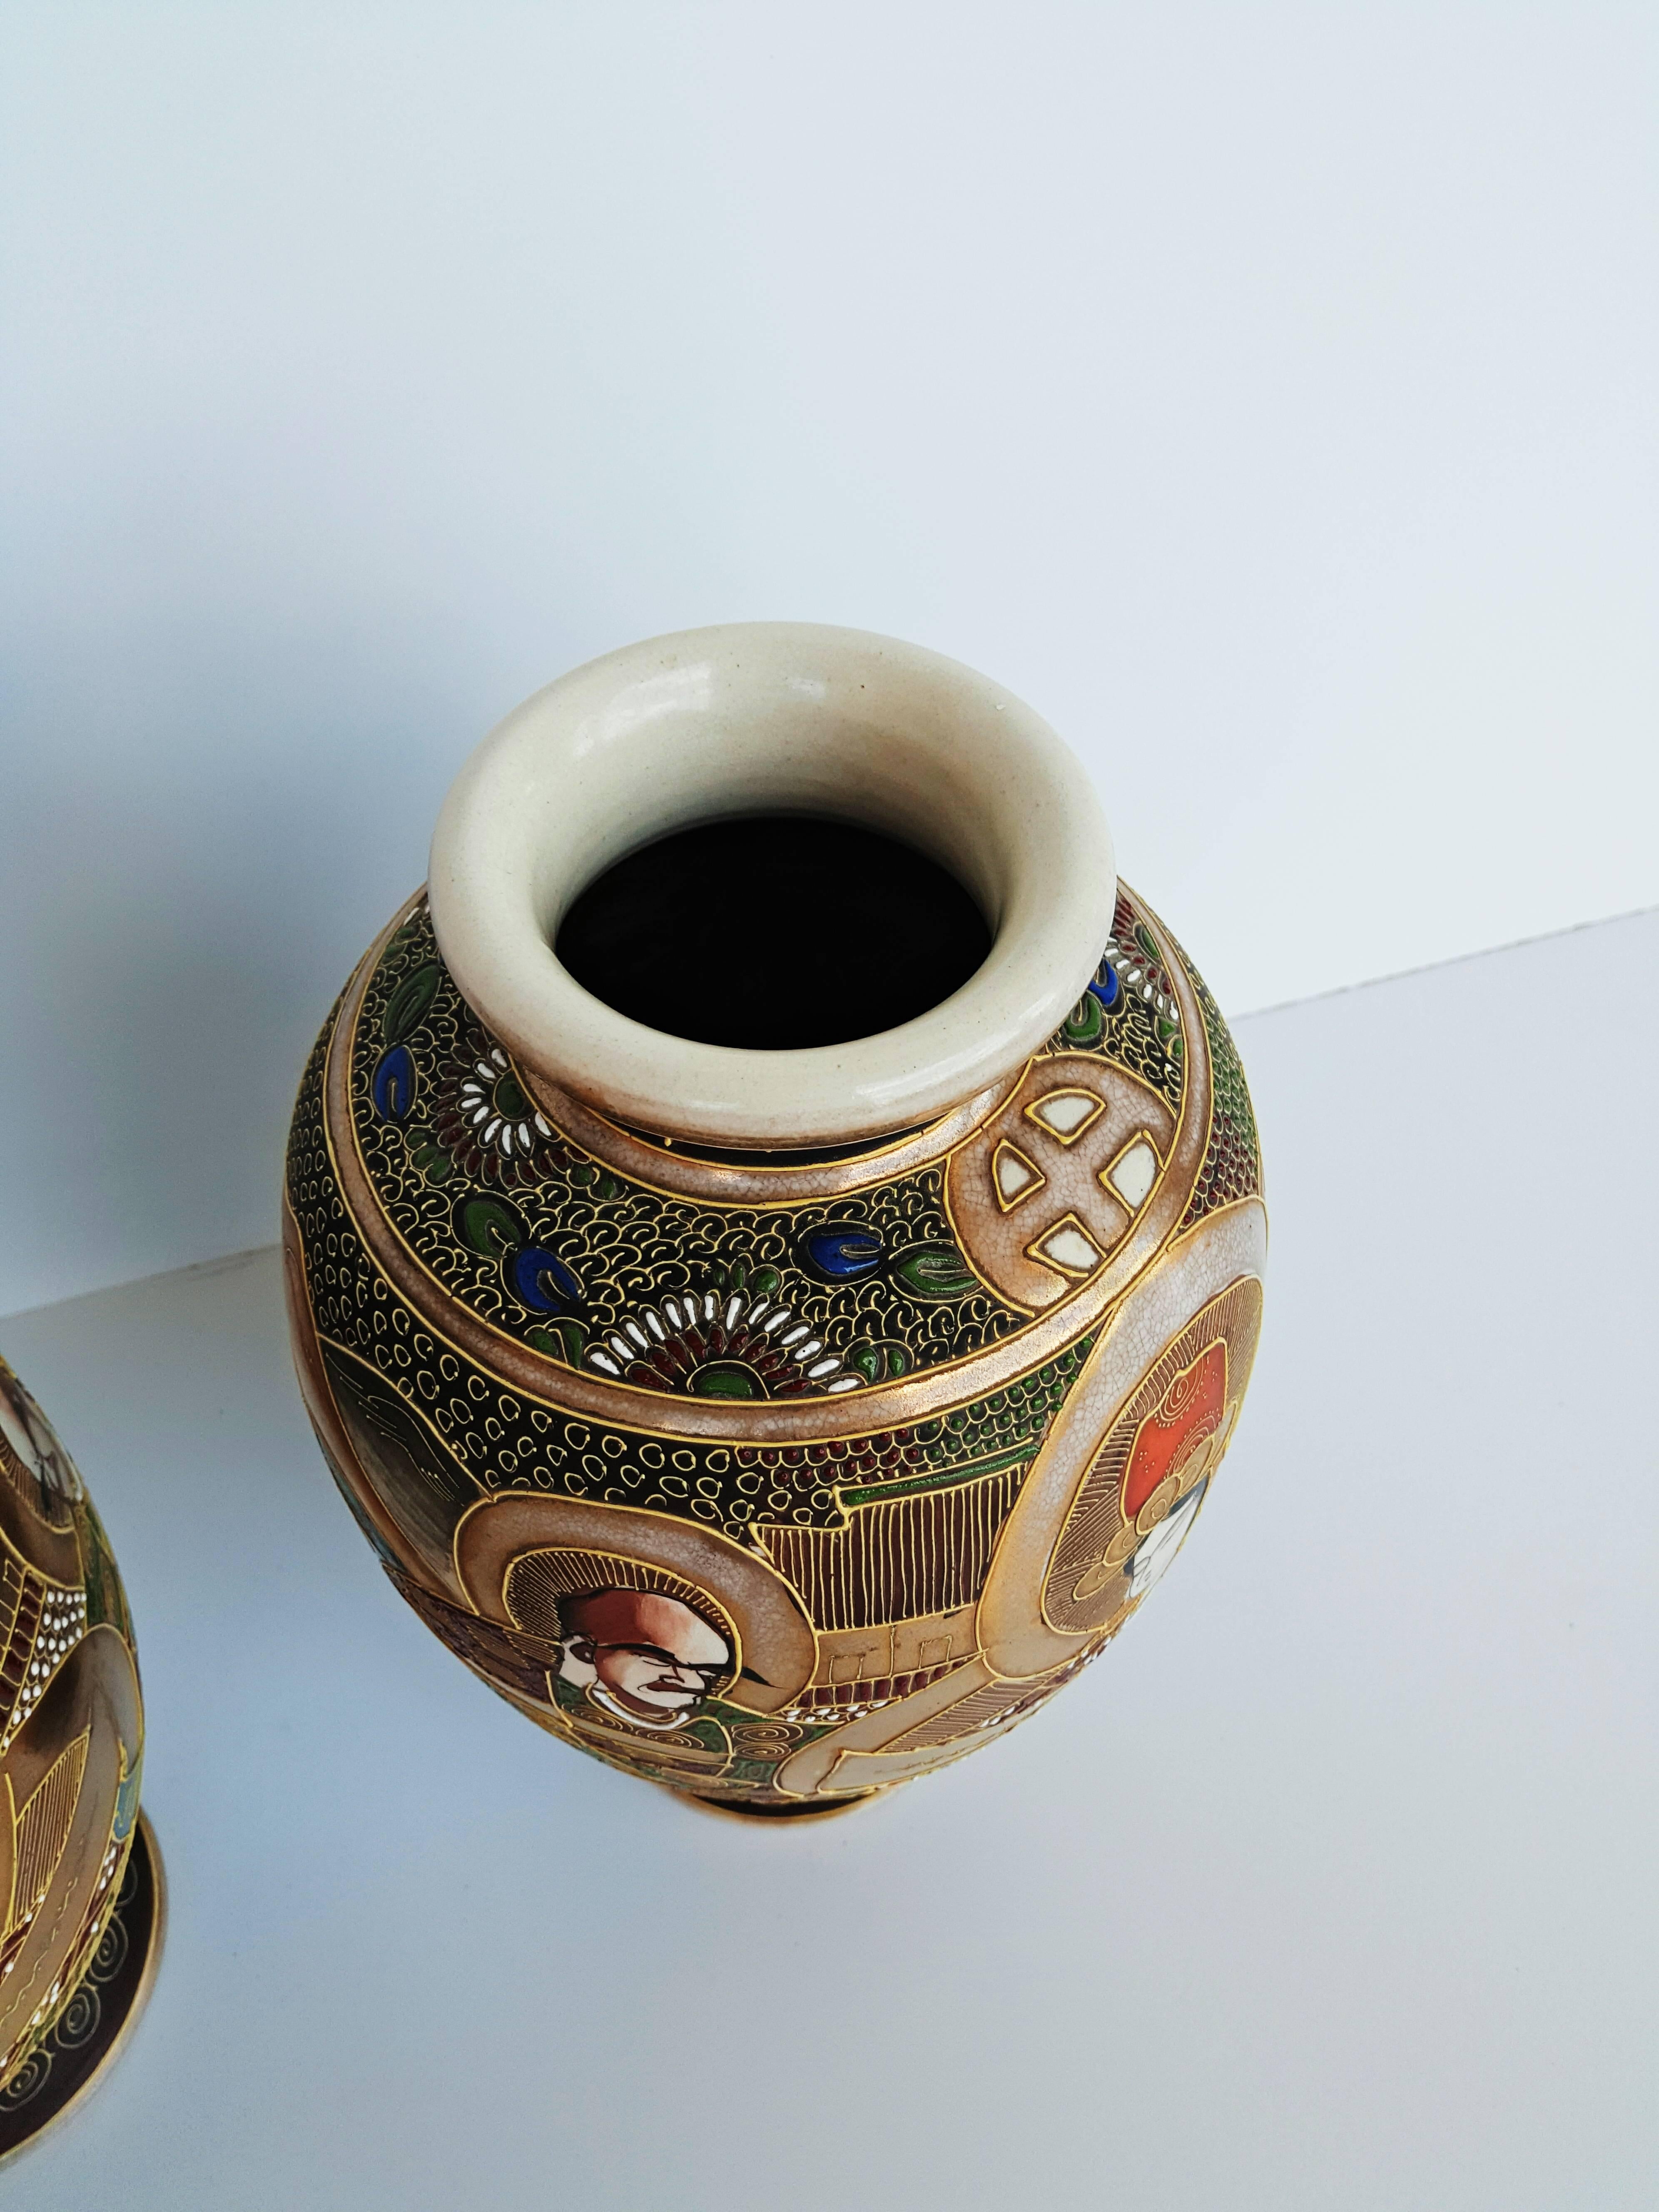 satsuma japanese vase